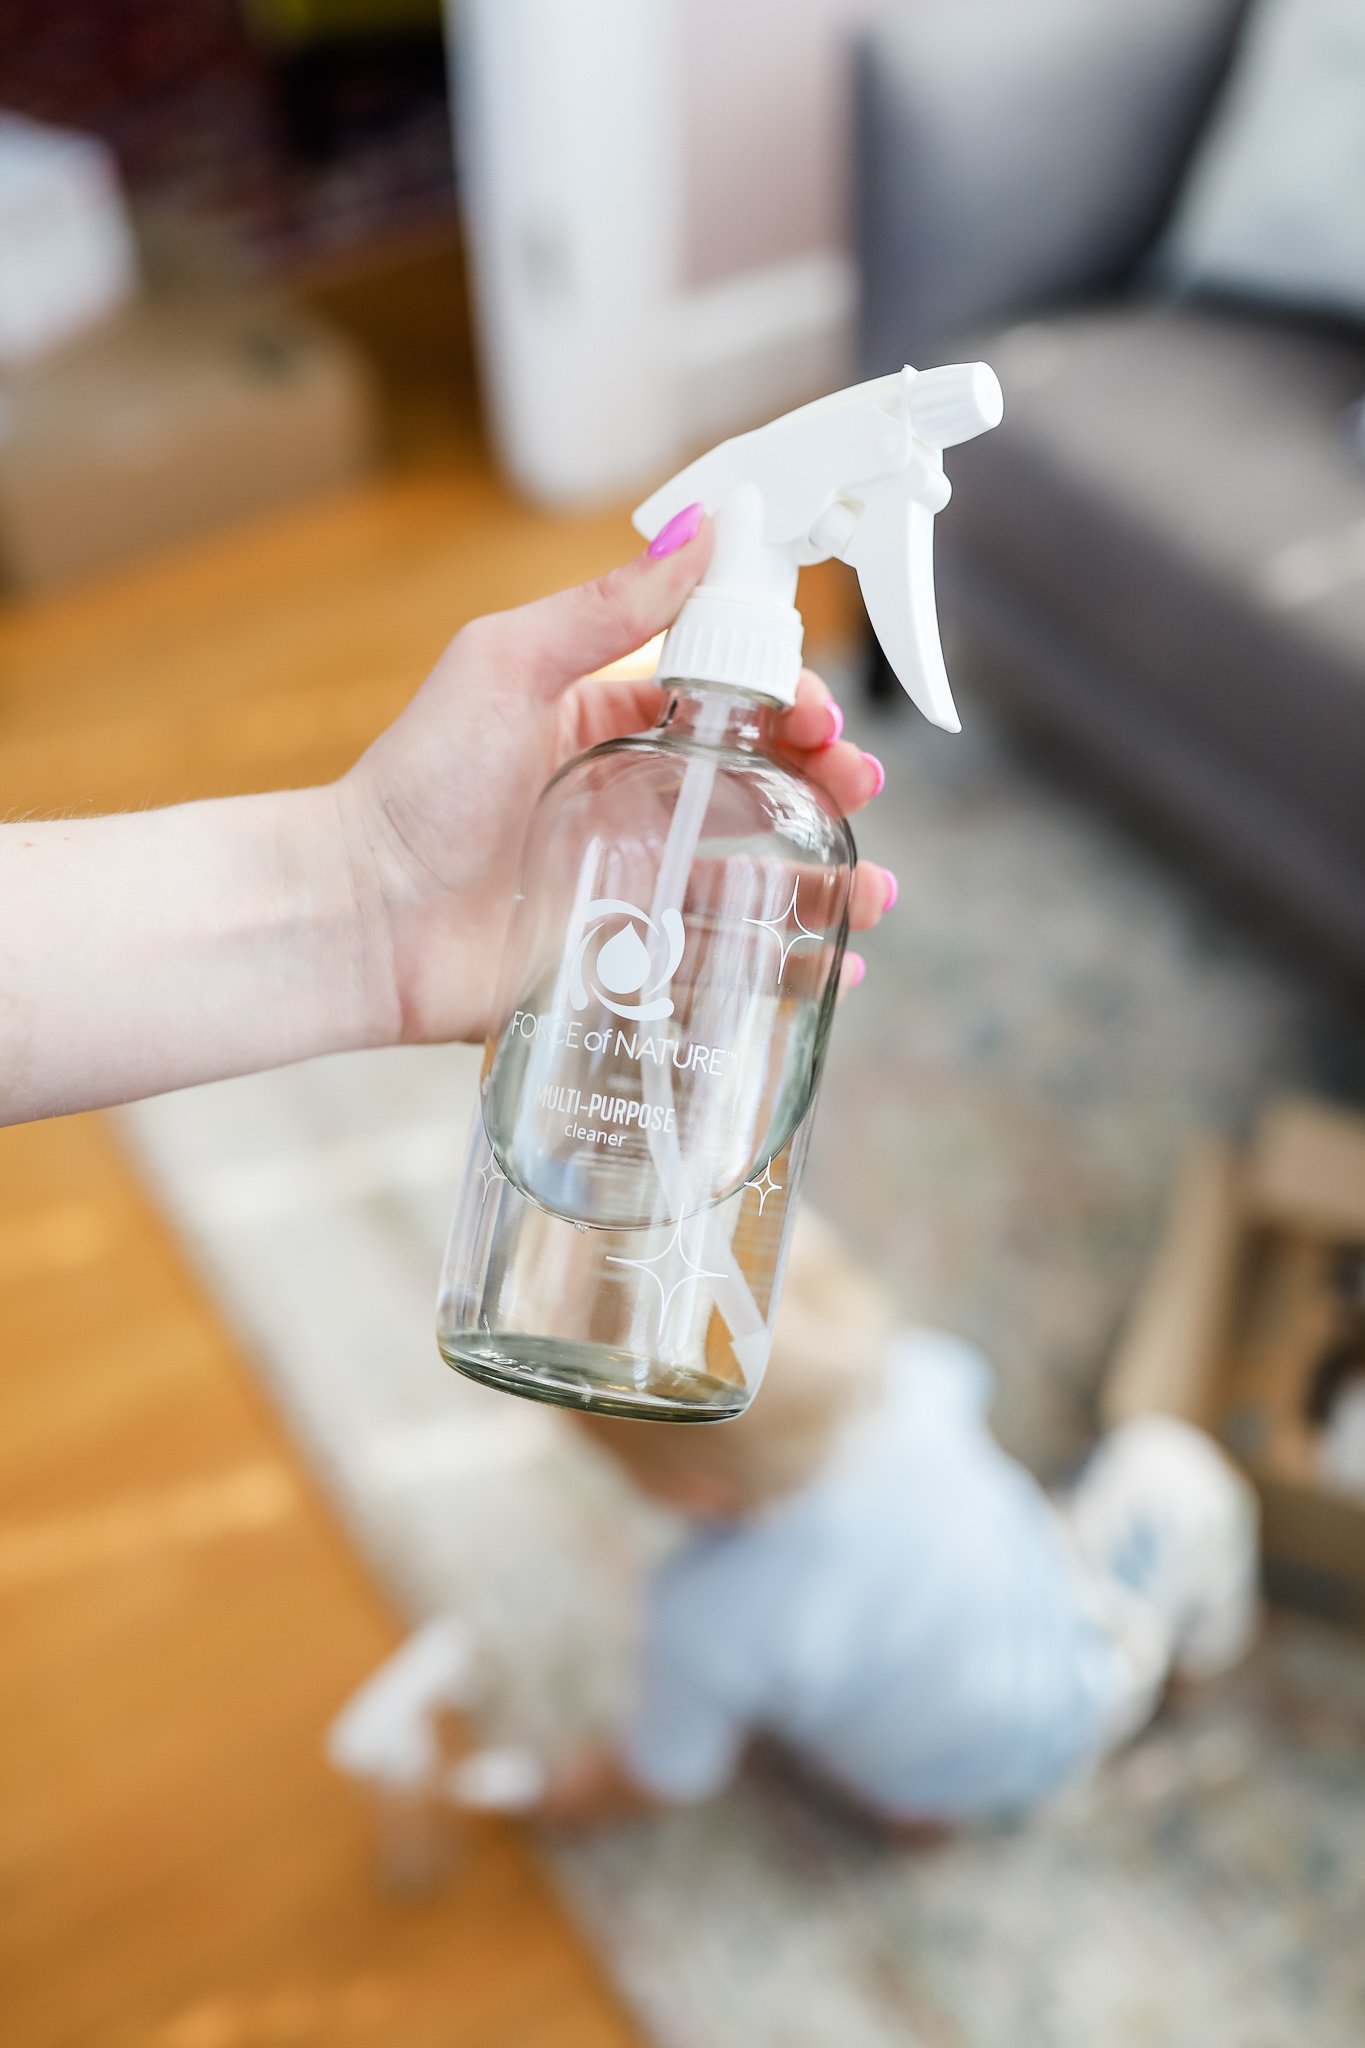 clean multipurpose disinfectant